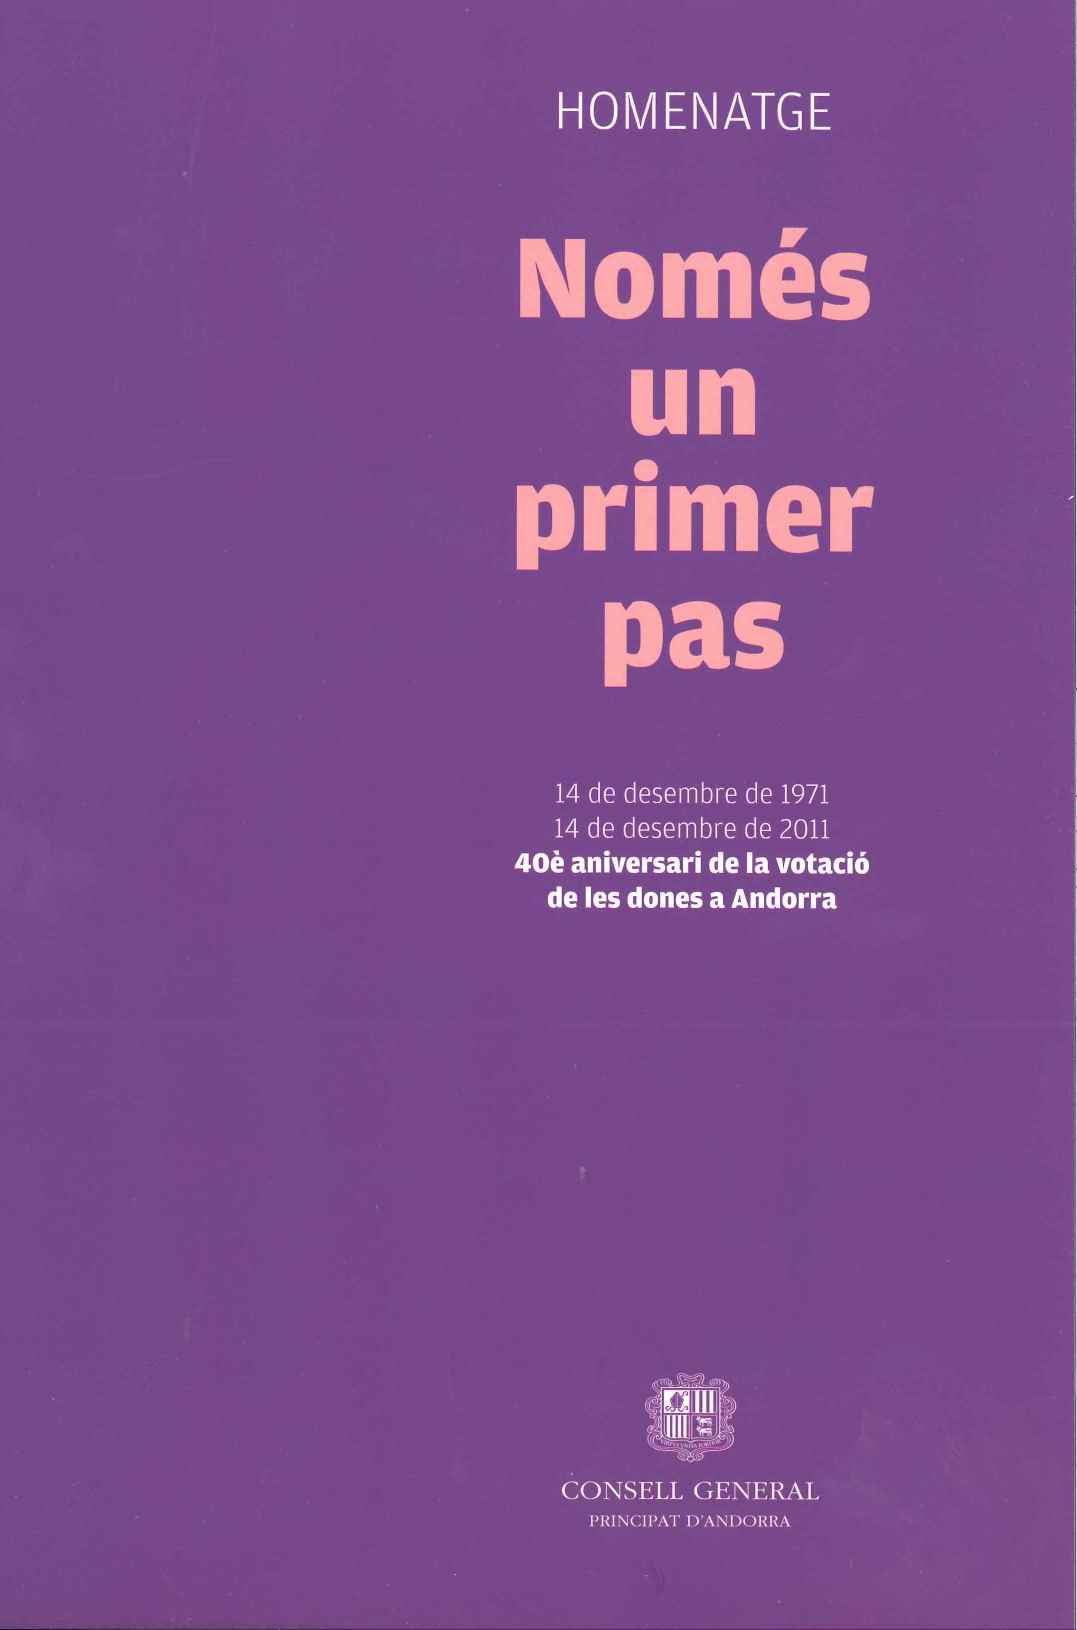 Només un primer pas. Homenatge 14 de desembre de 1971-14 de desembre de 2011. 40è aniversari de la votació de les dones a Andorra